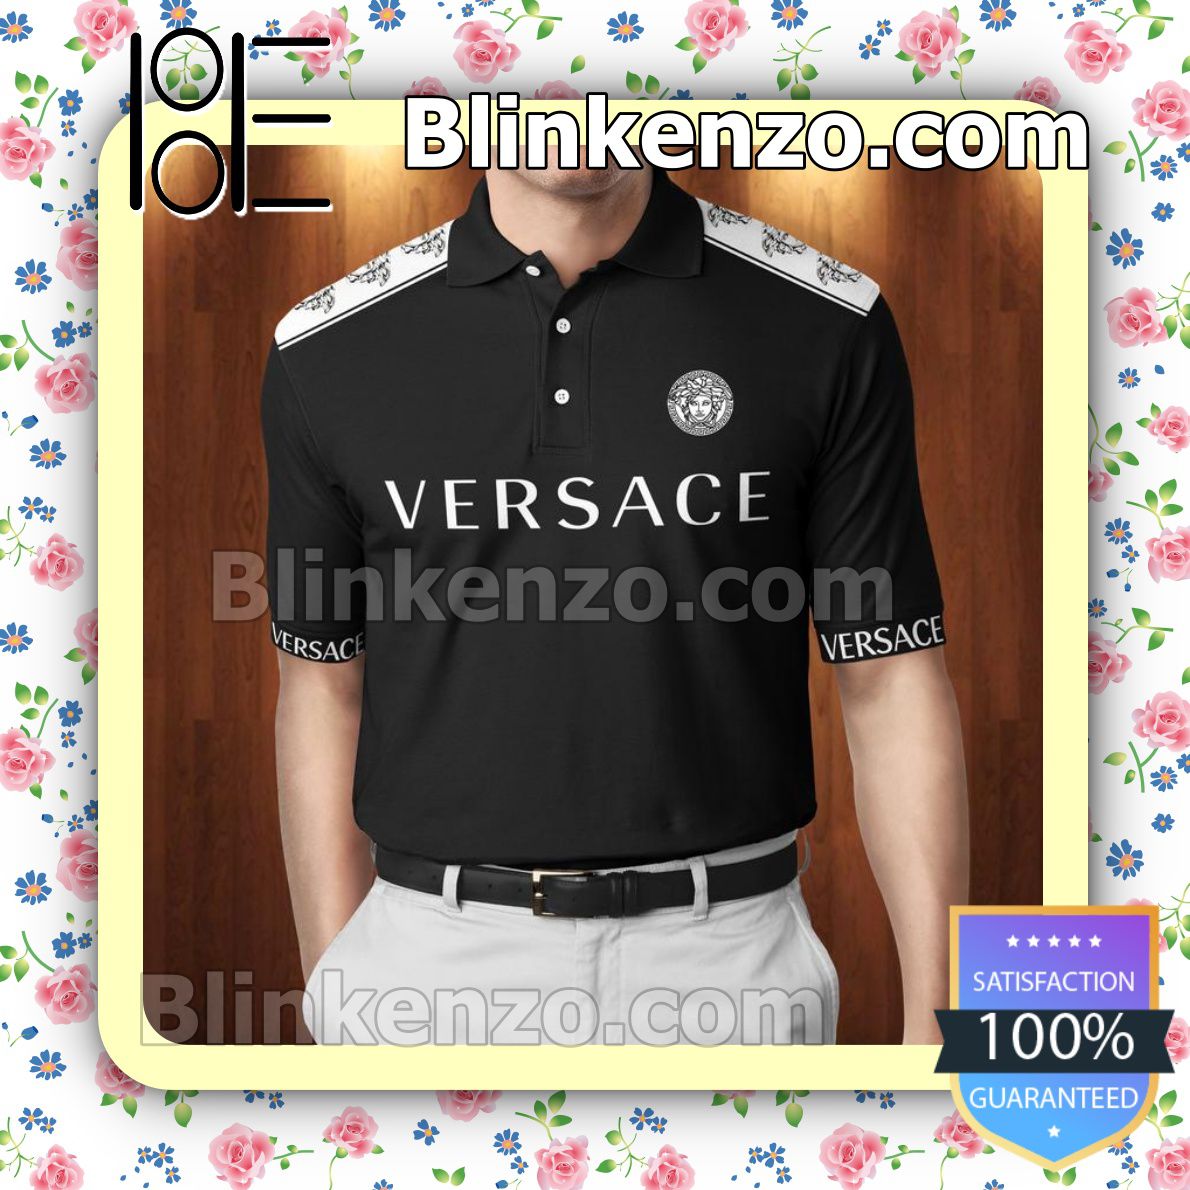 gordijn Voorkomen whisky Gianni Versace Logo Black White Embroidered Polo Shirts - Blinkenzo